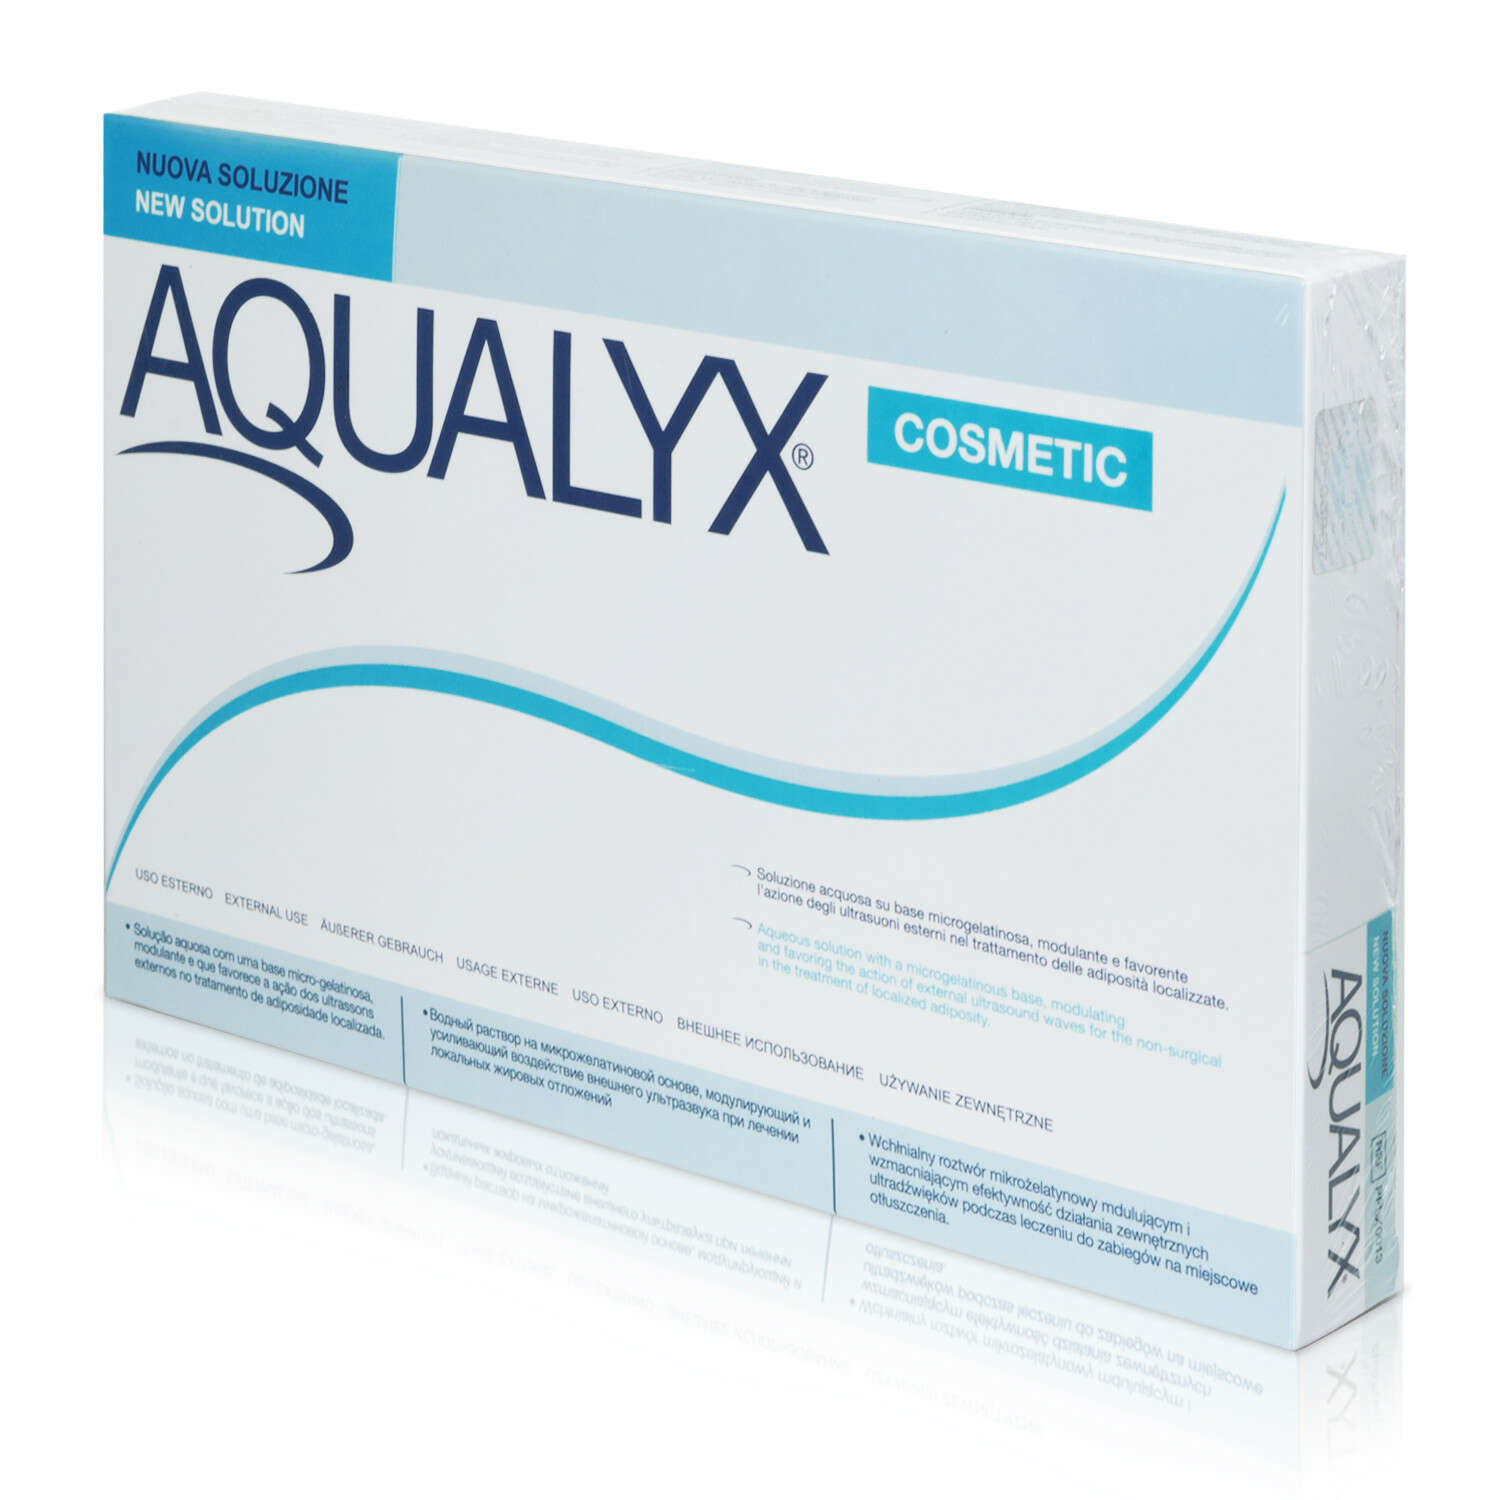 Aqualyx - L'alternativa non chirurgica nel trattamento delle adiposità localizzate 